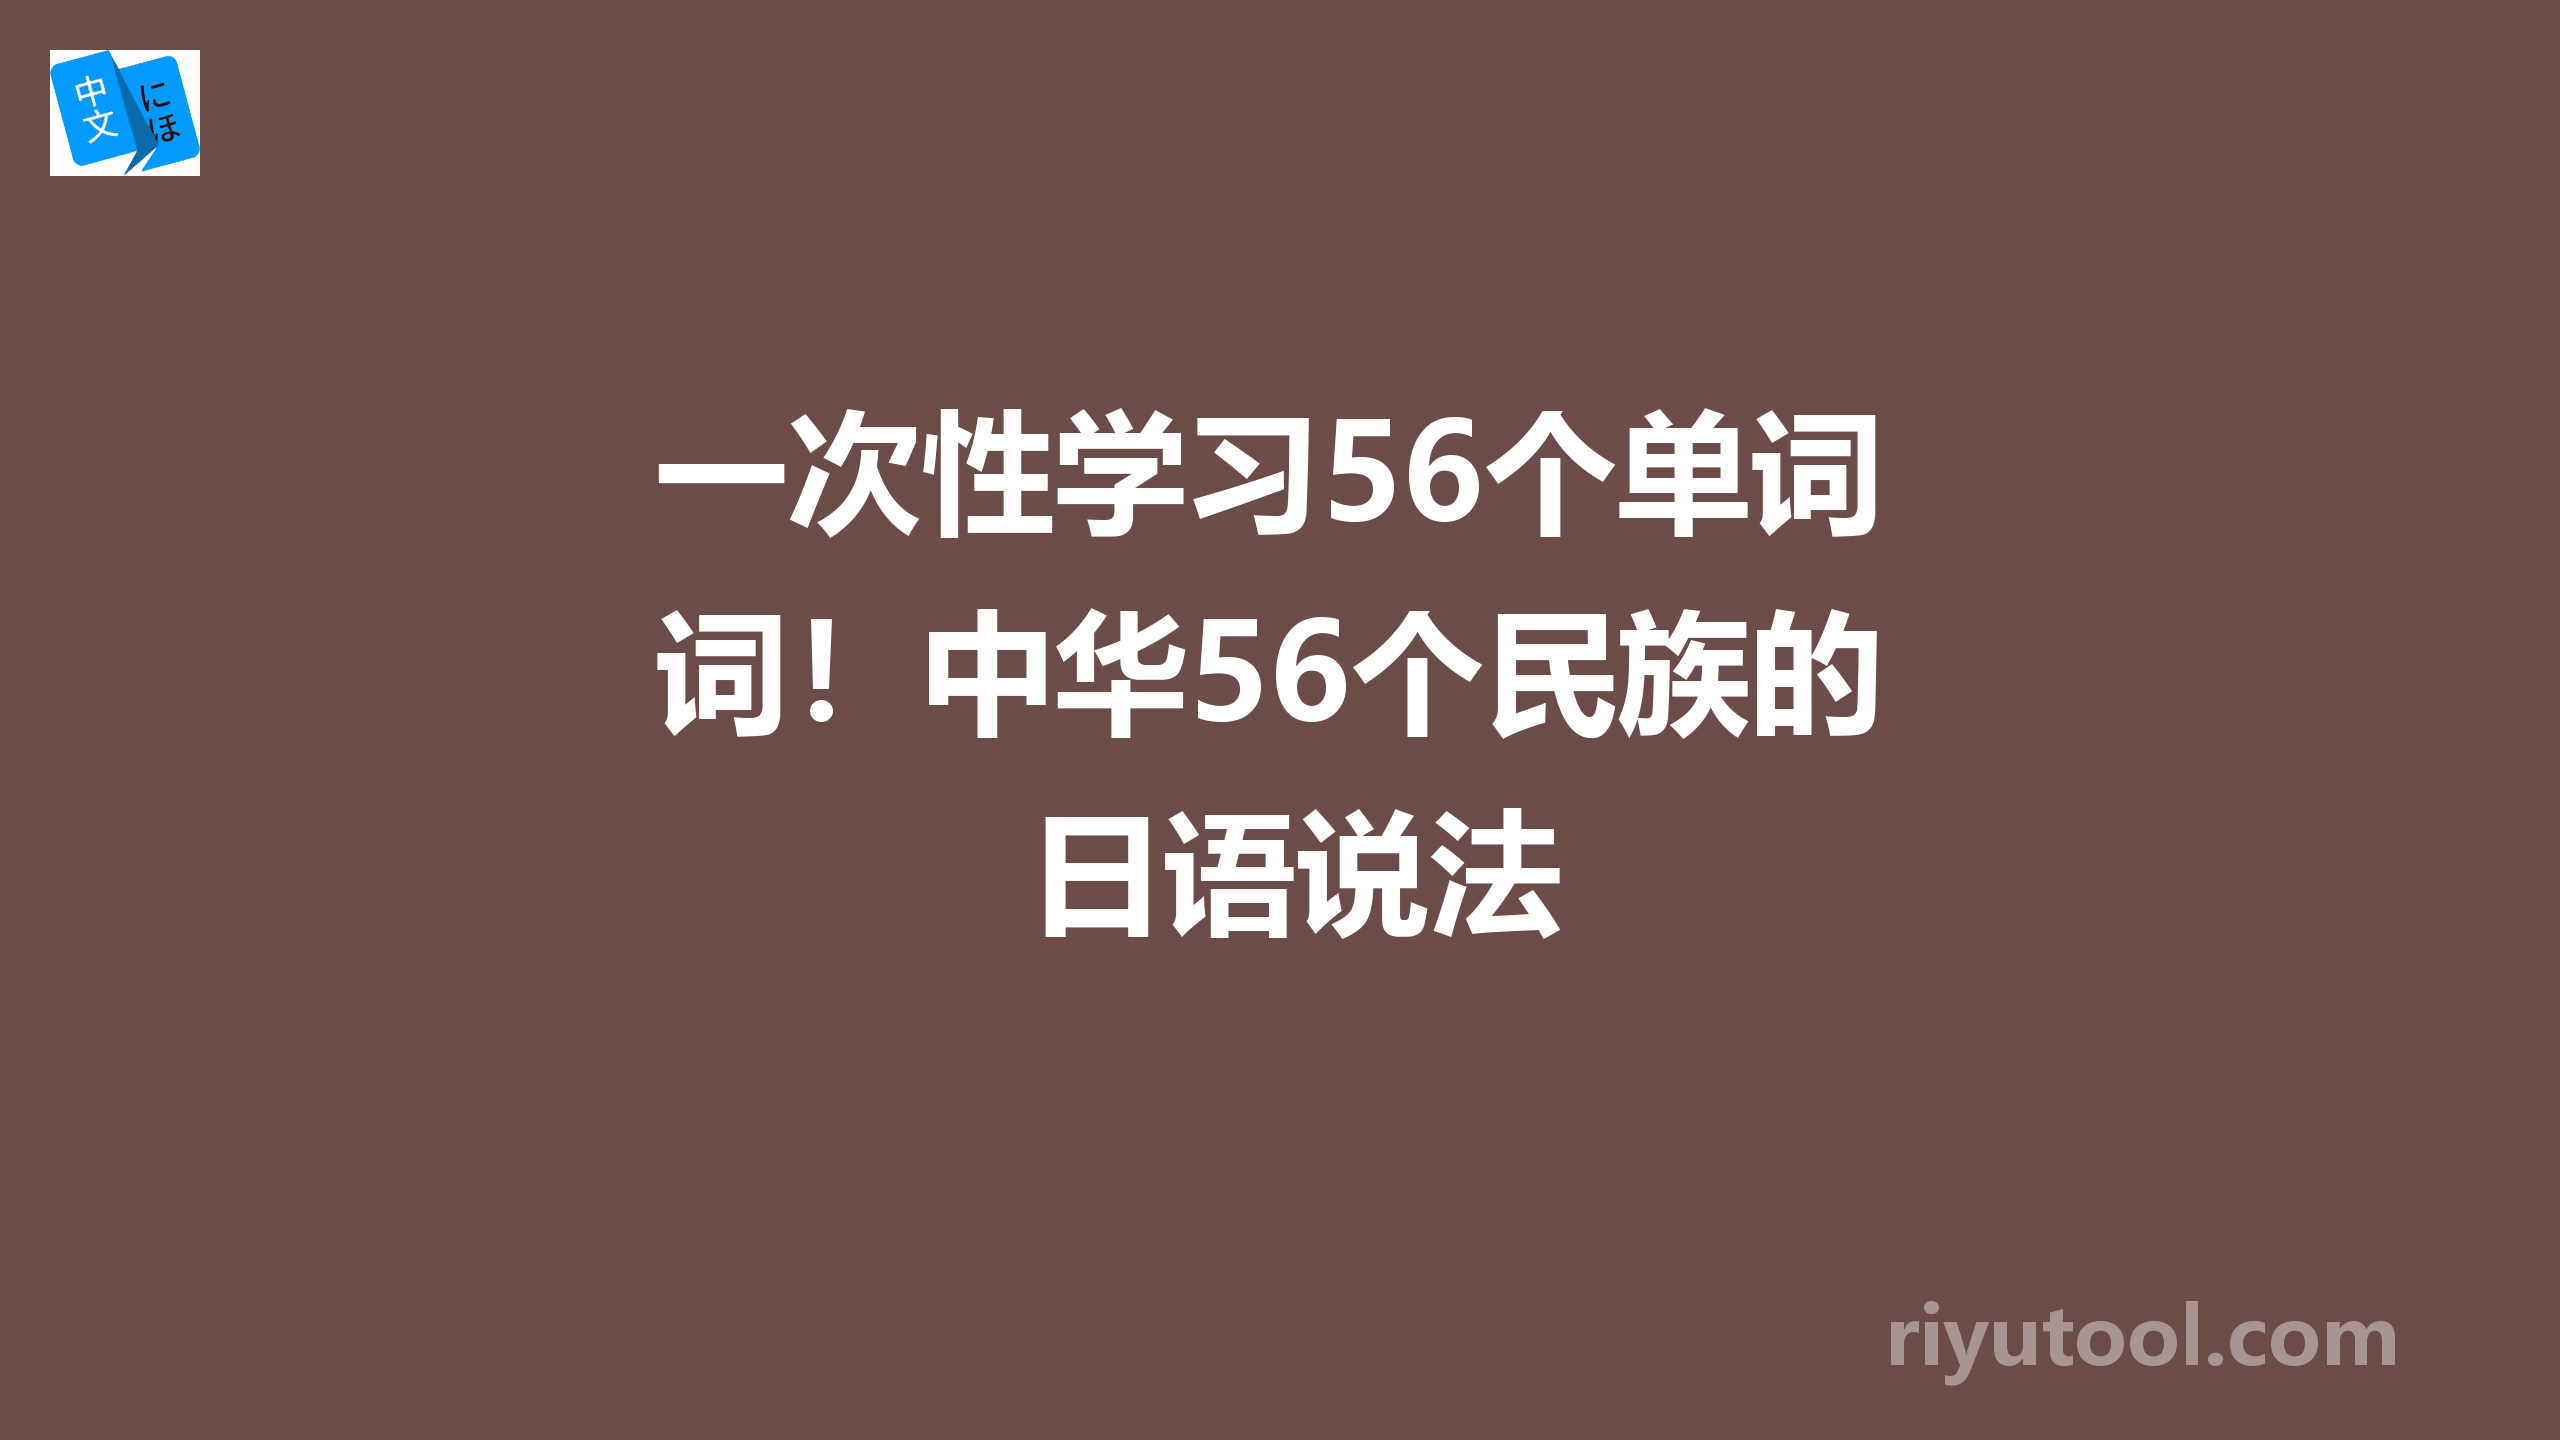 一次性学习56个单词！中华56个民族的日语说法